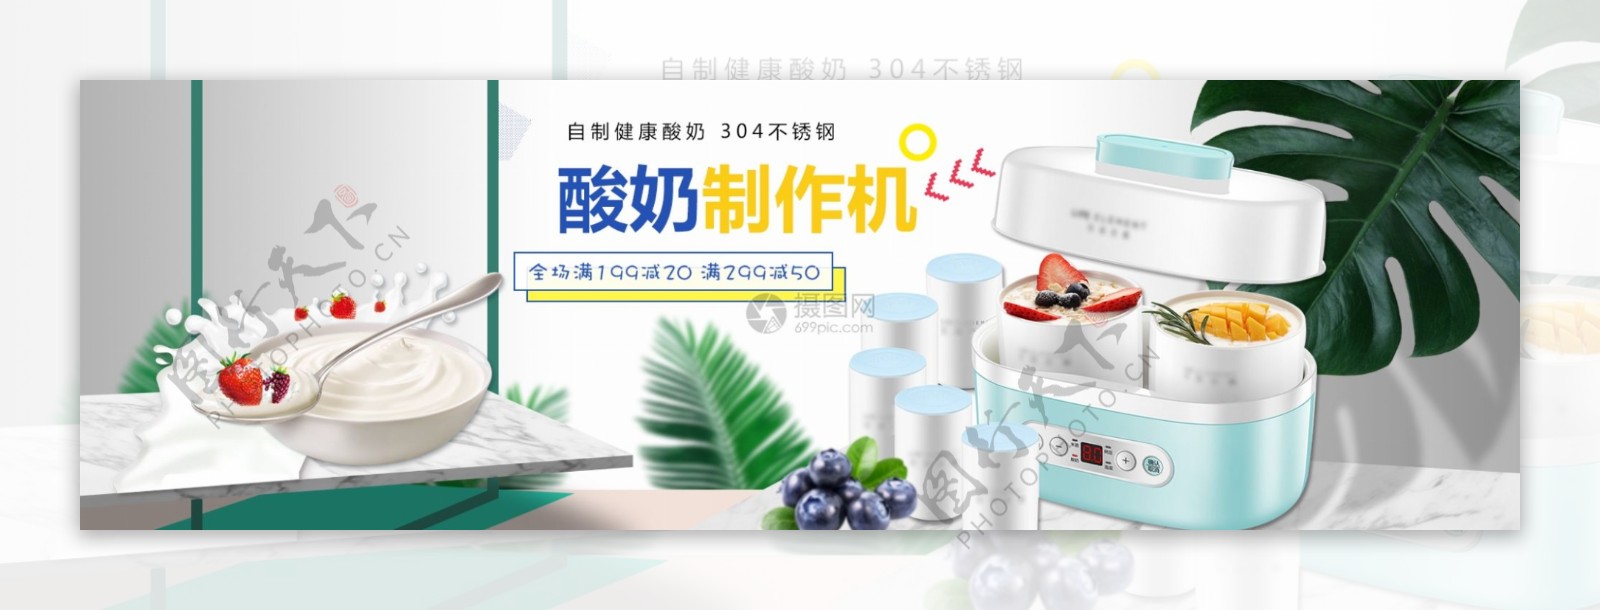 不锈钢自制酸奶机促销淘宝banner